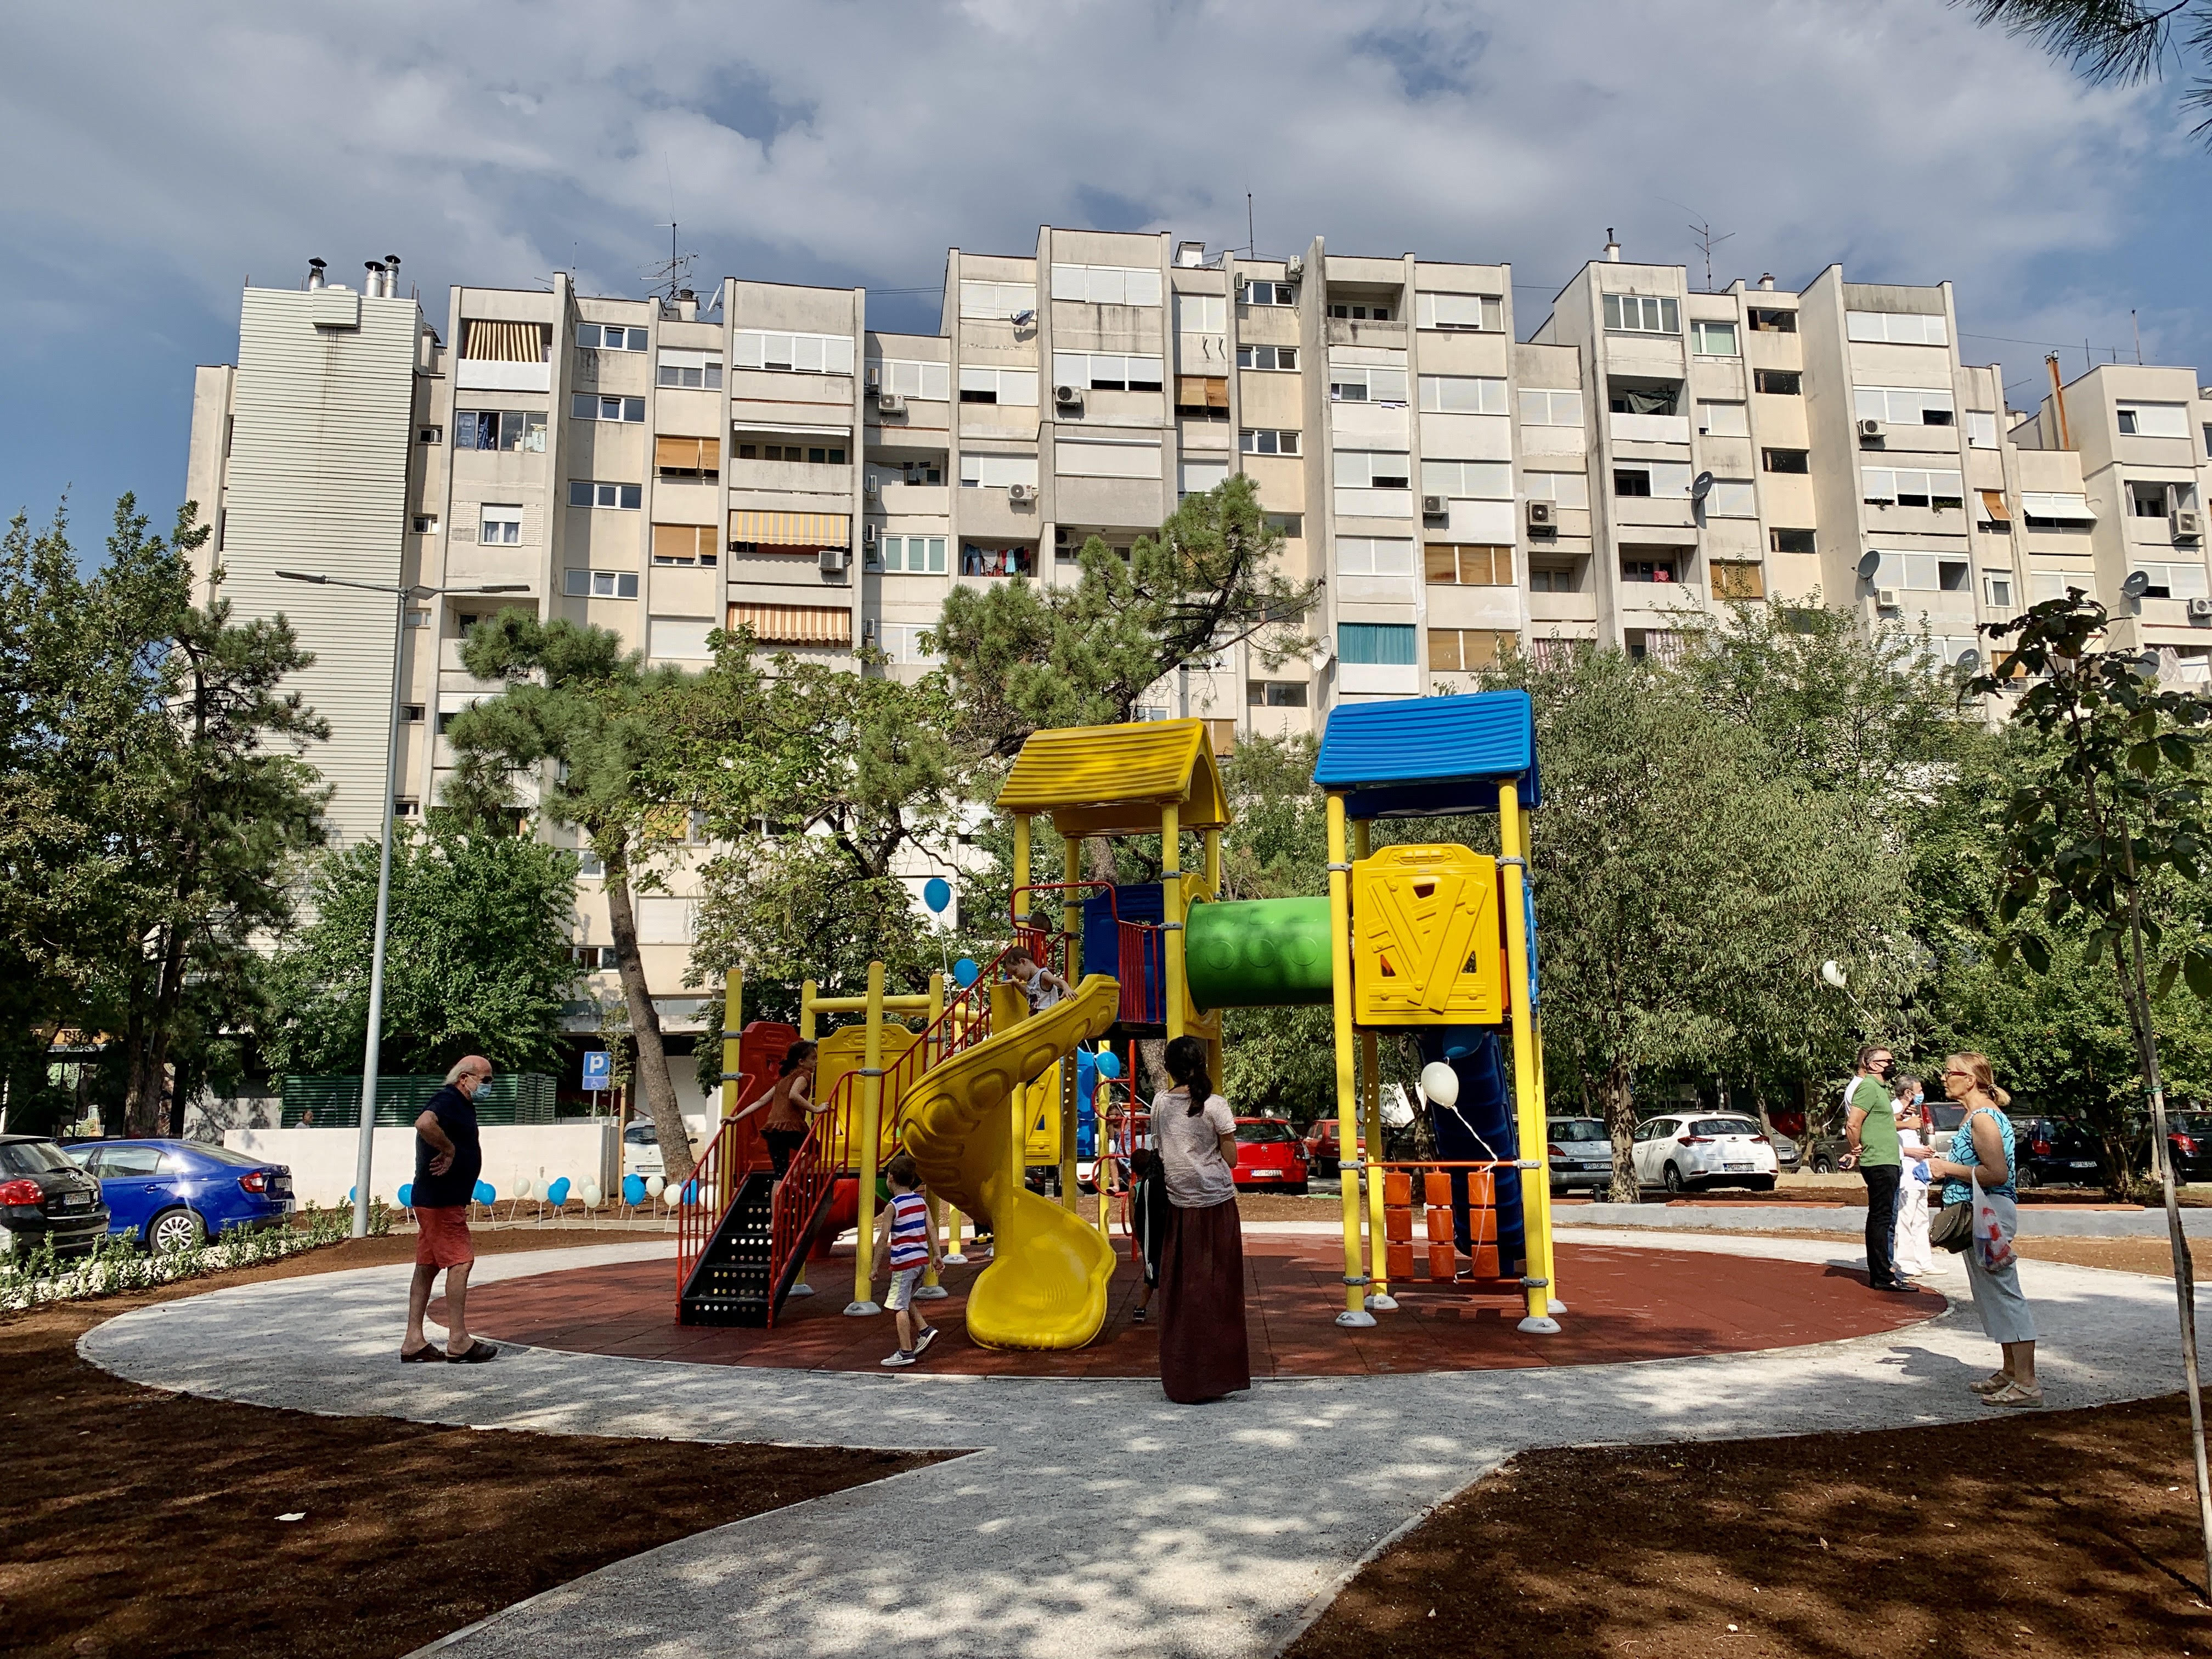 Video surveillance set up at the children’s playground in Moskovska Street